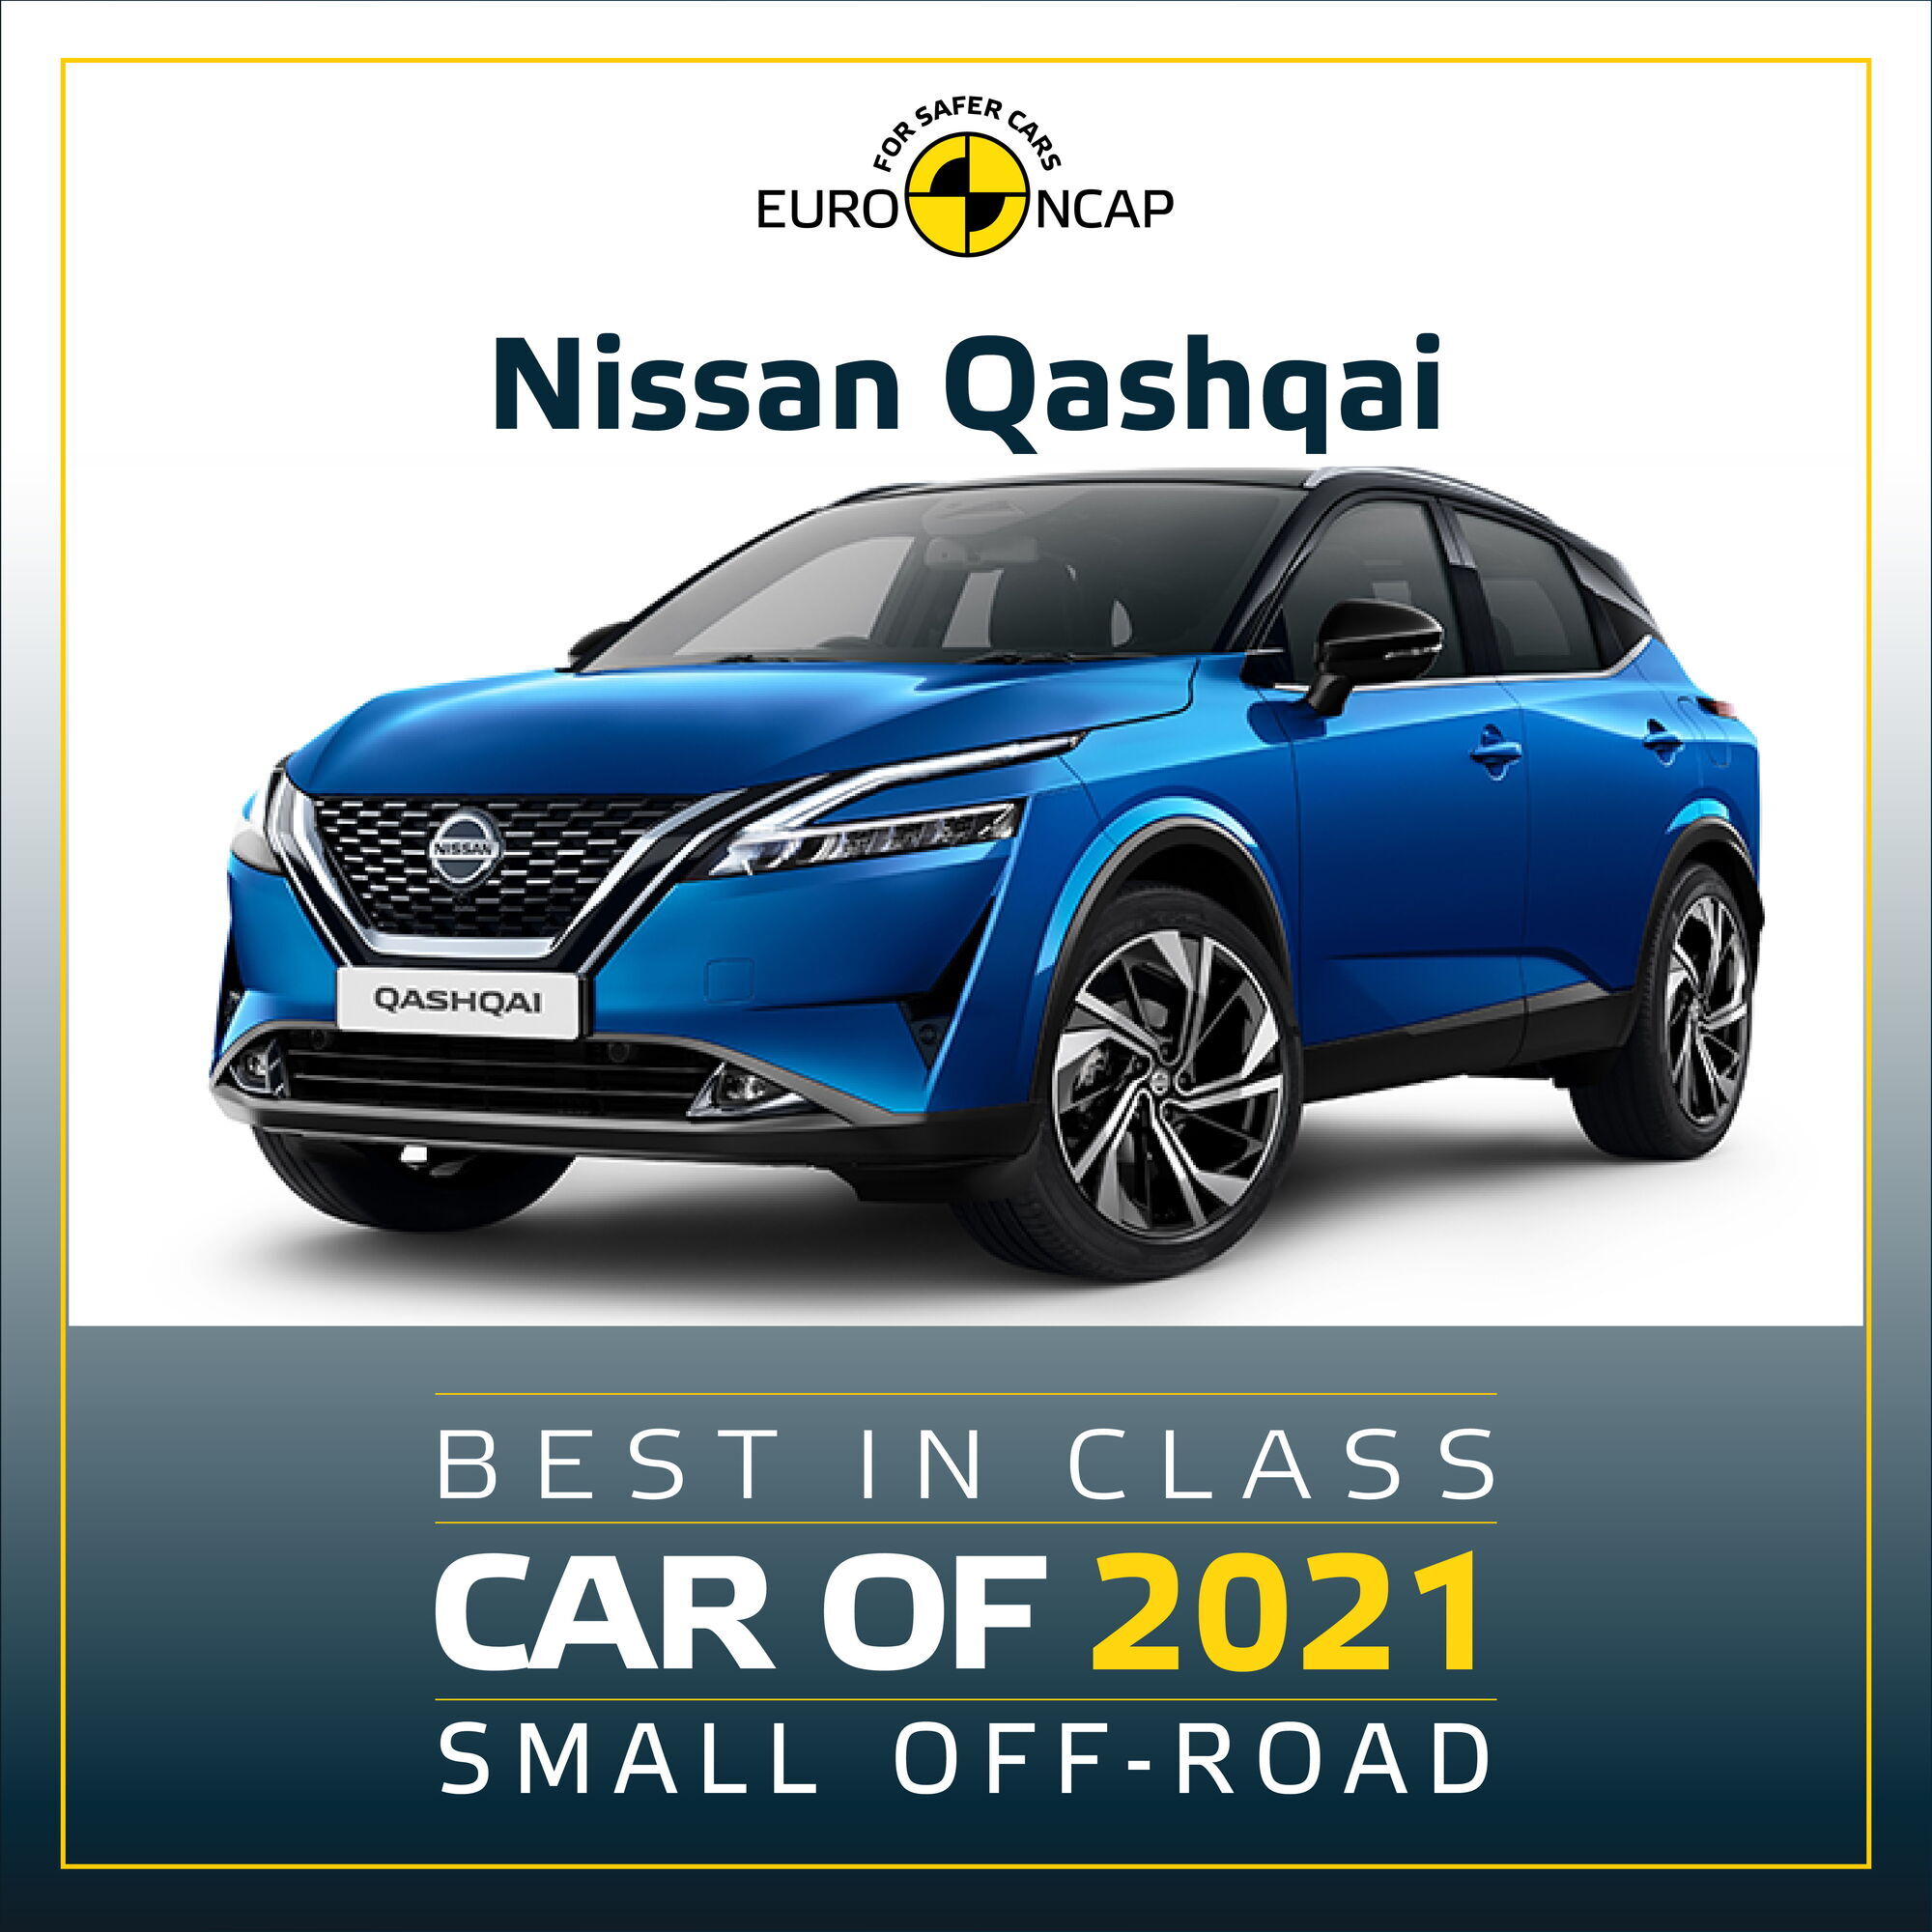 У категорії компактних SUV перемогу отримав Nissan Qashqai нового покоління.